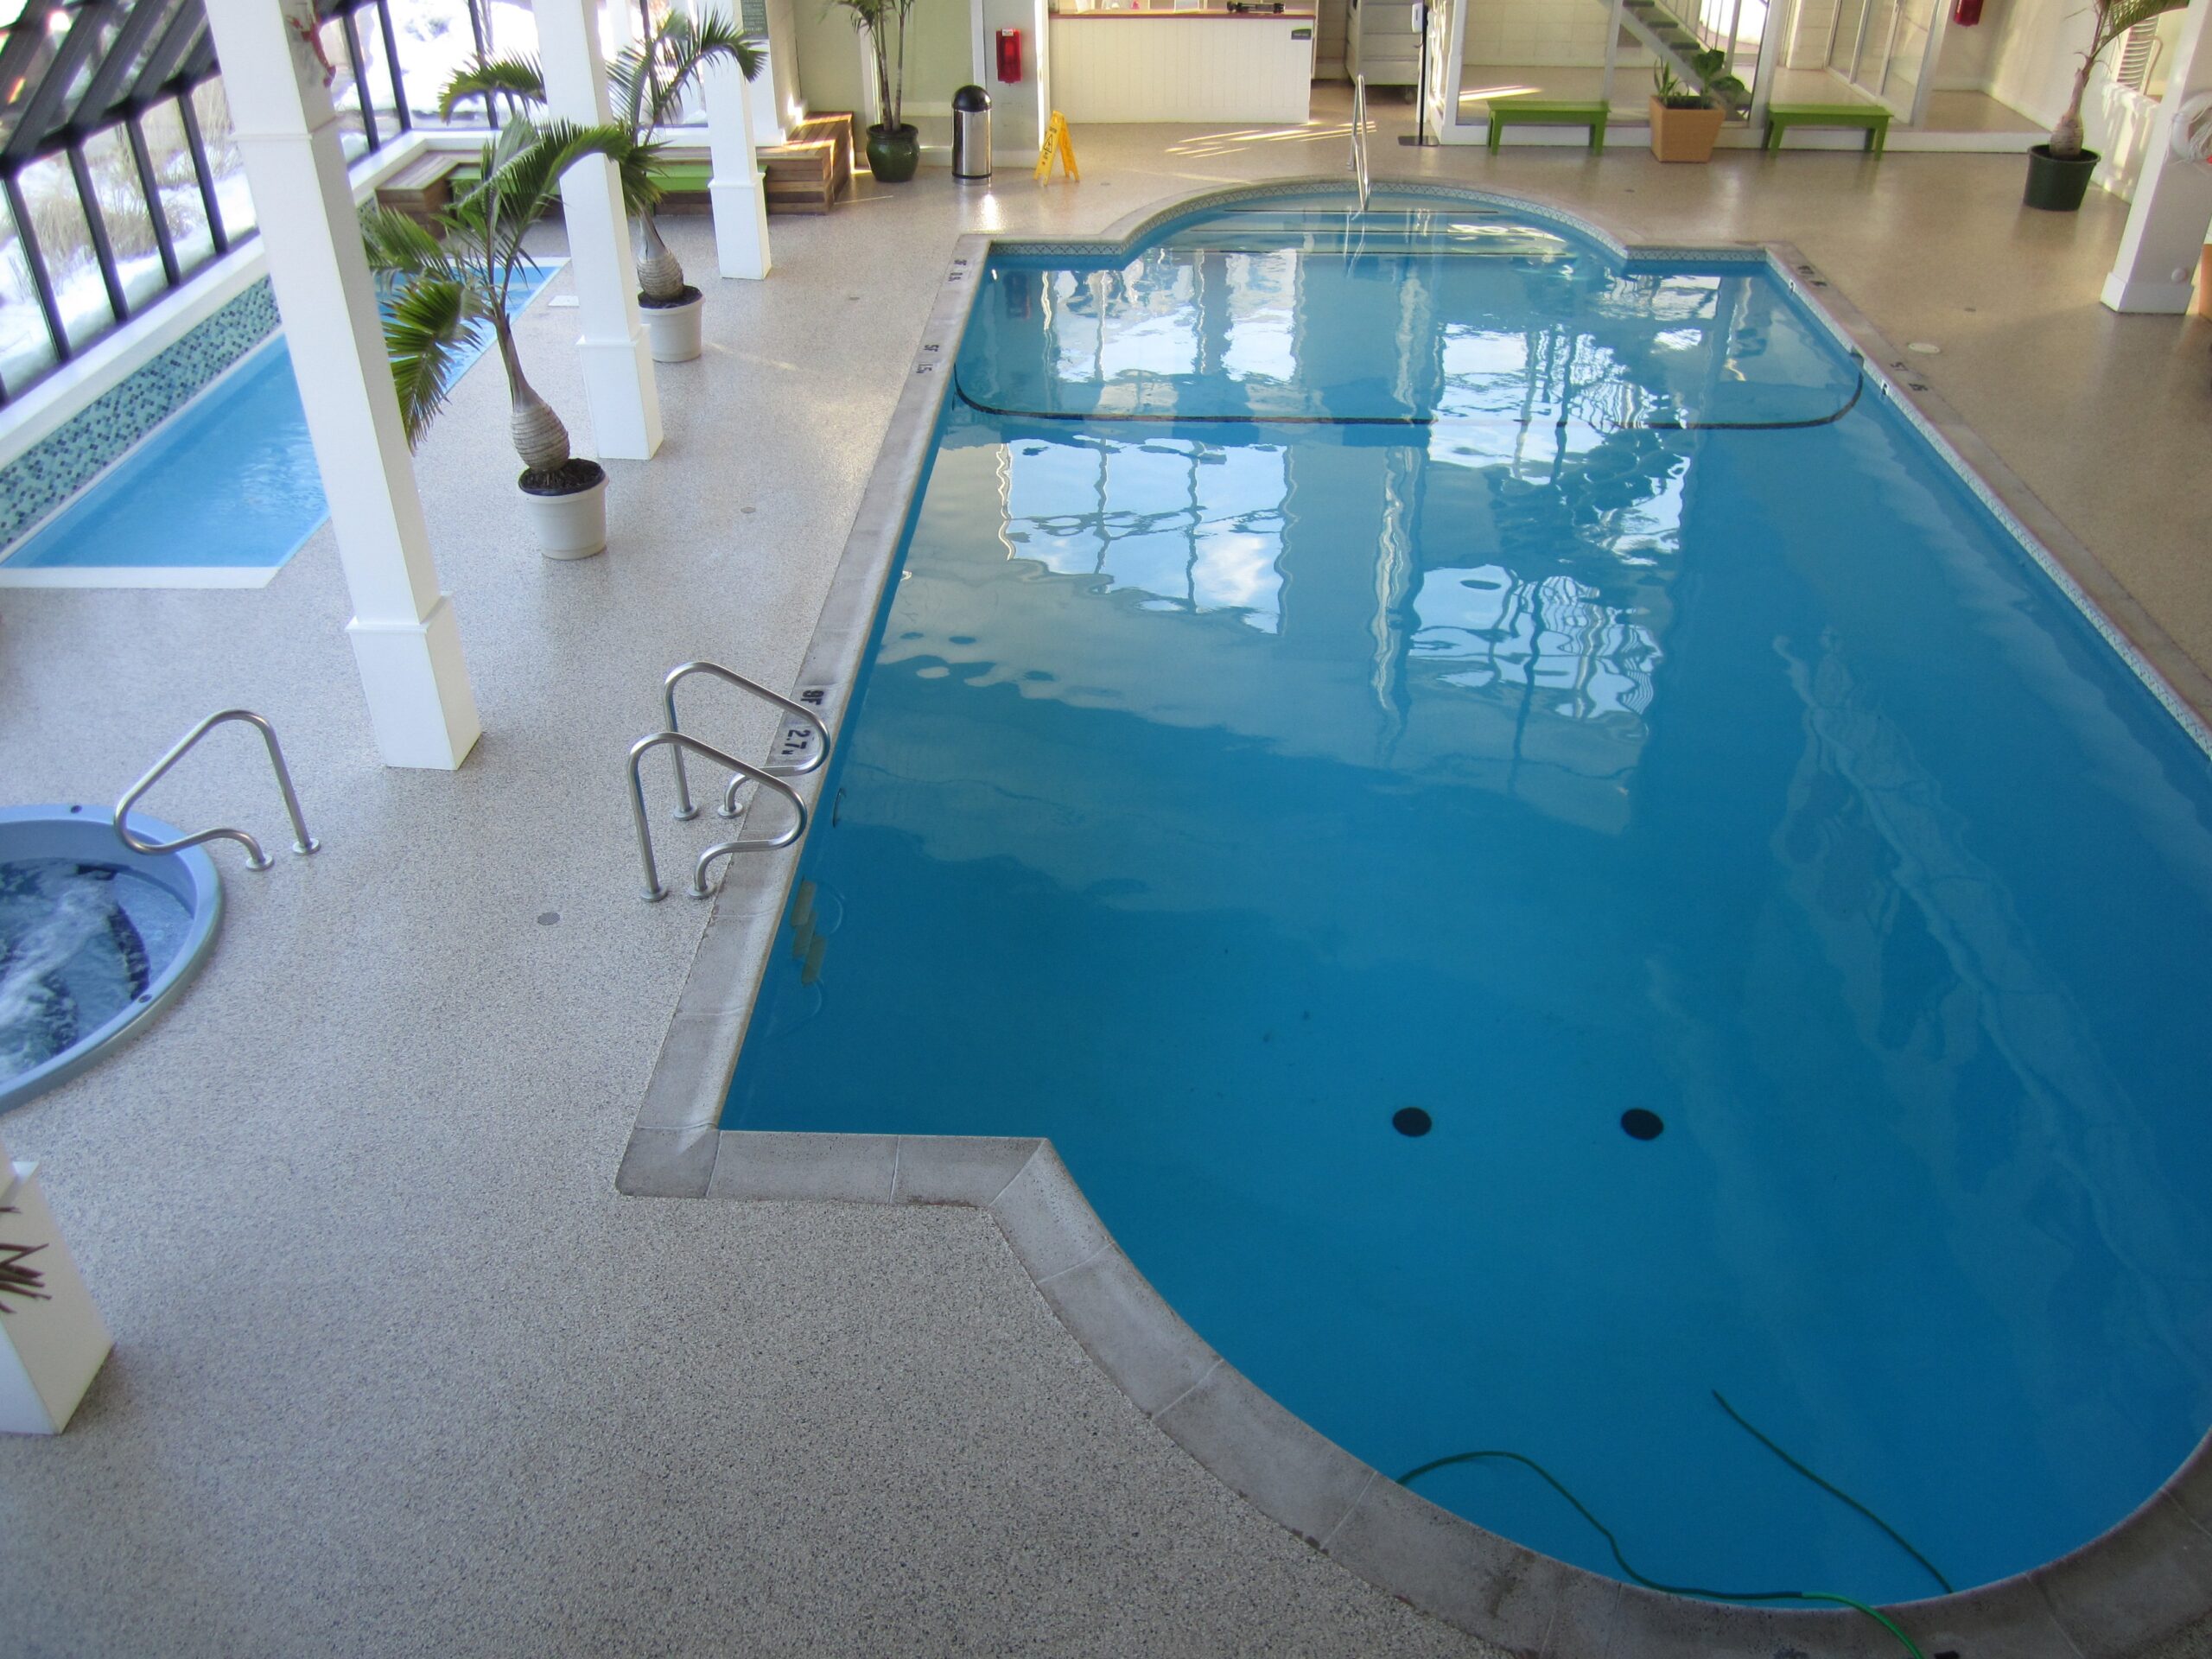 Understanding Epoxy Flooring for Pool Decks